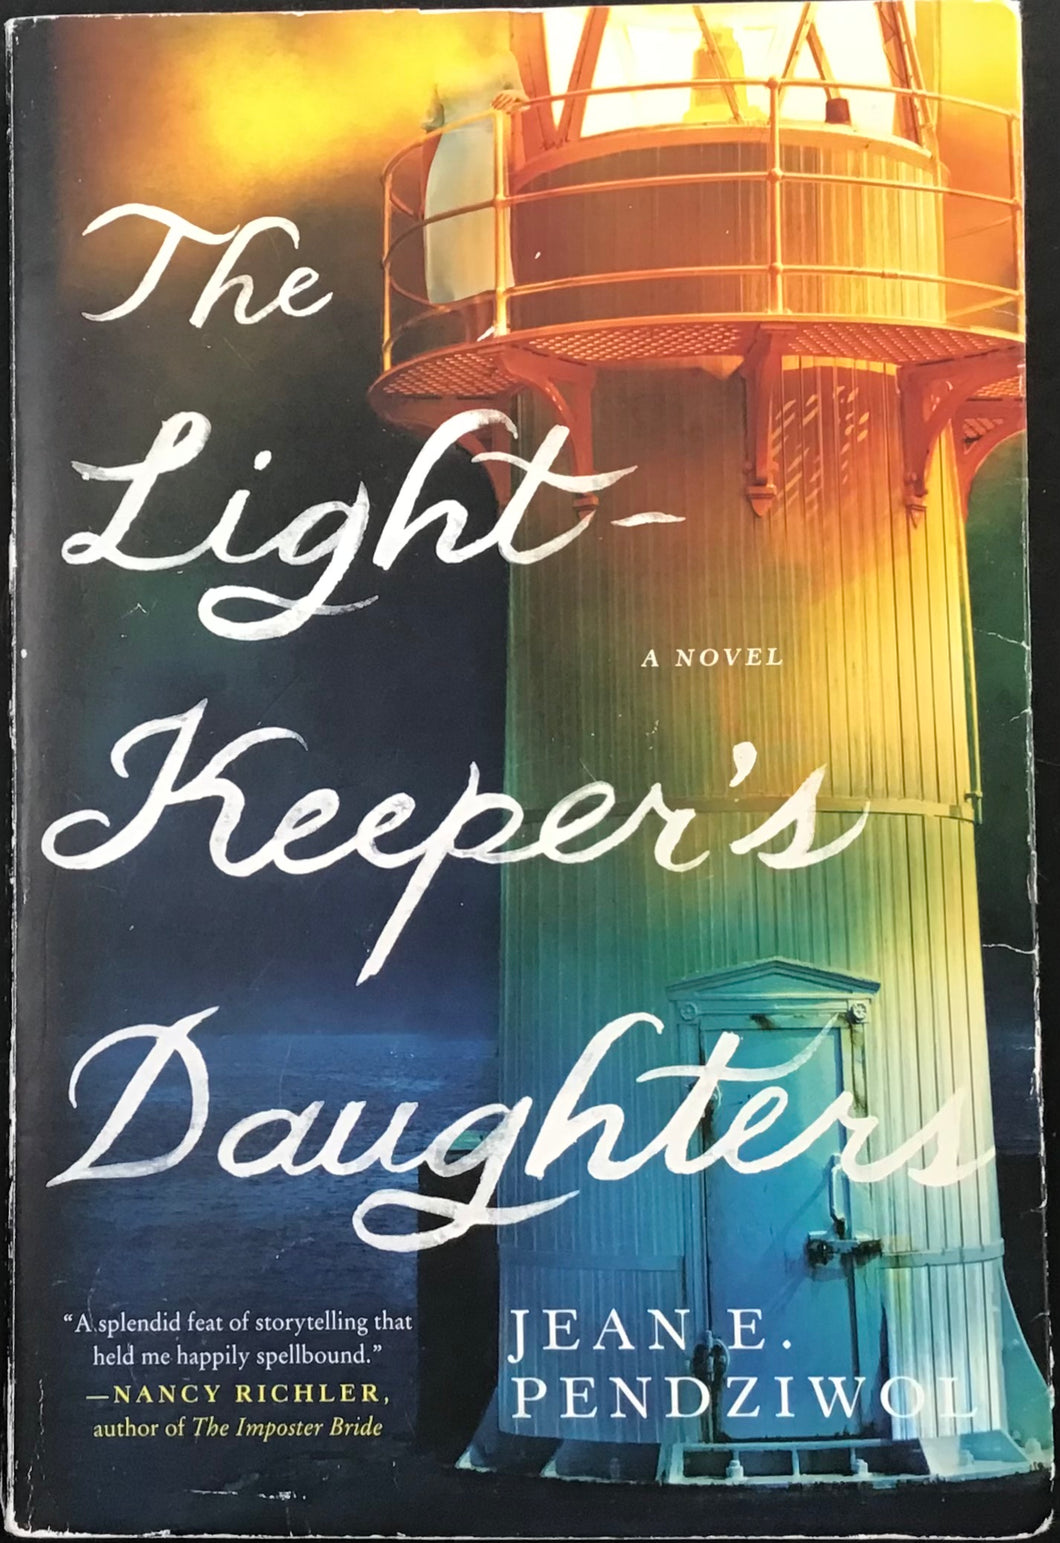 The Light Keeper's Daughter, Jean E. Pendziwol